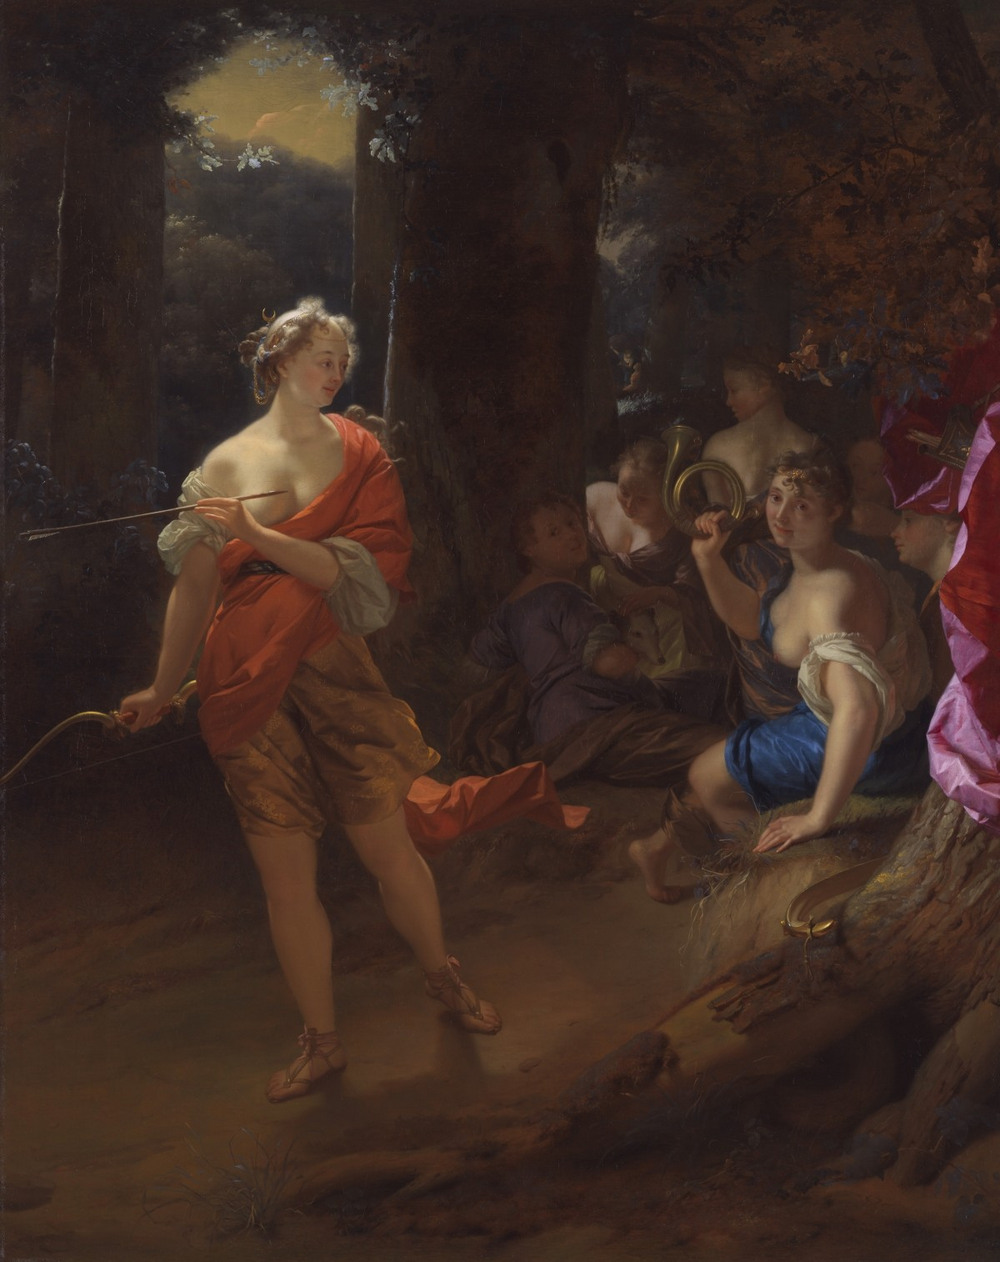 Лейденская коллекция доступна онлайн. Частный коллекционер опубликовал картины золотого века голландской живописи  11